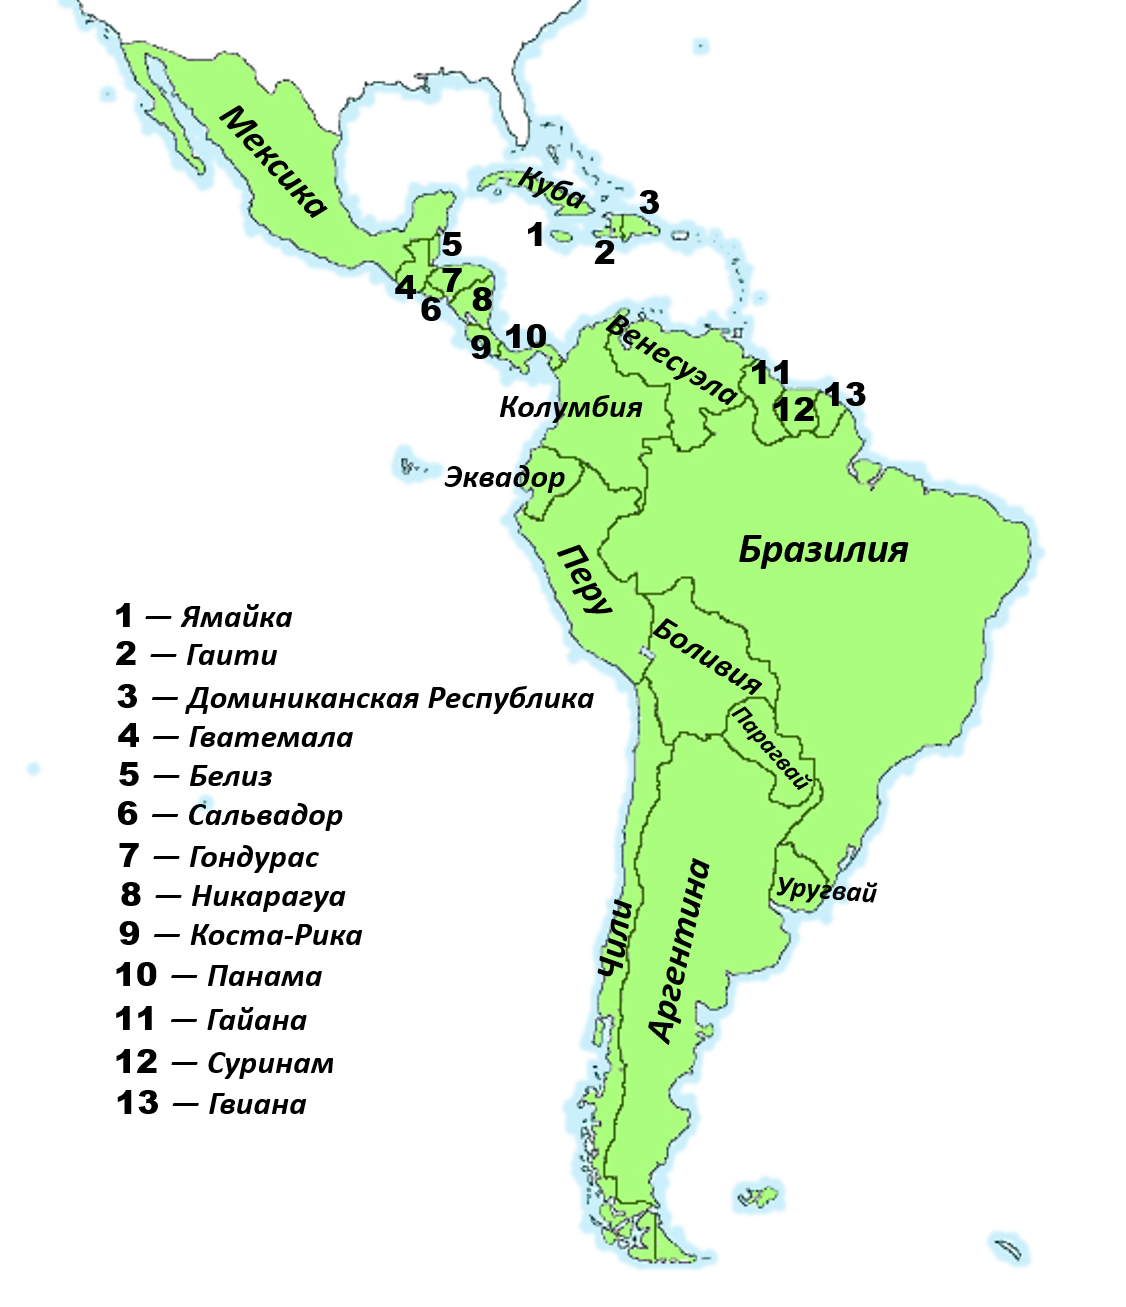 Название государства и название столицы северной америки. Политическая карта Латинской Америки со странами. Латинская Америка карта со странами и столицами на русском. Контурная карта государств Латинской Америки. Карта Латинской Америки со странами.